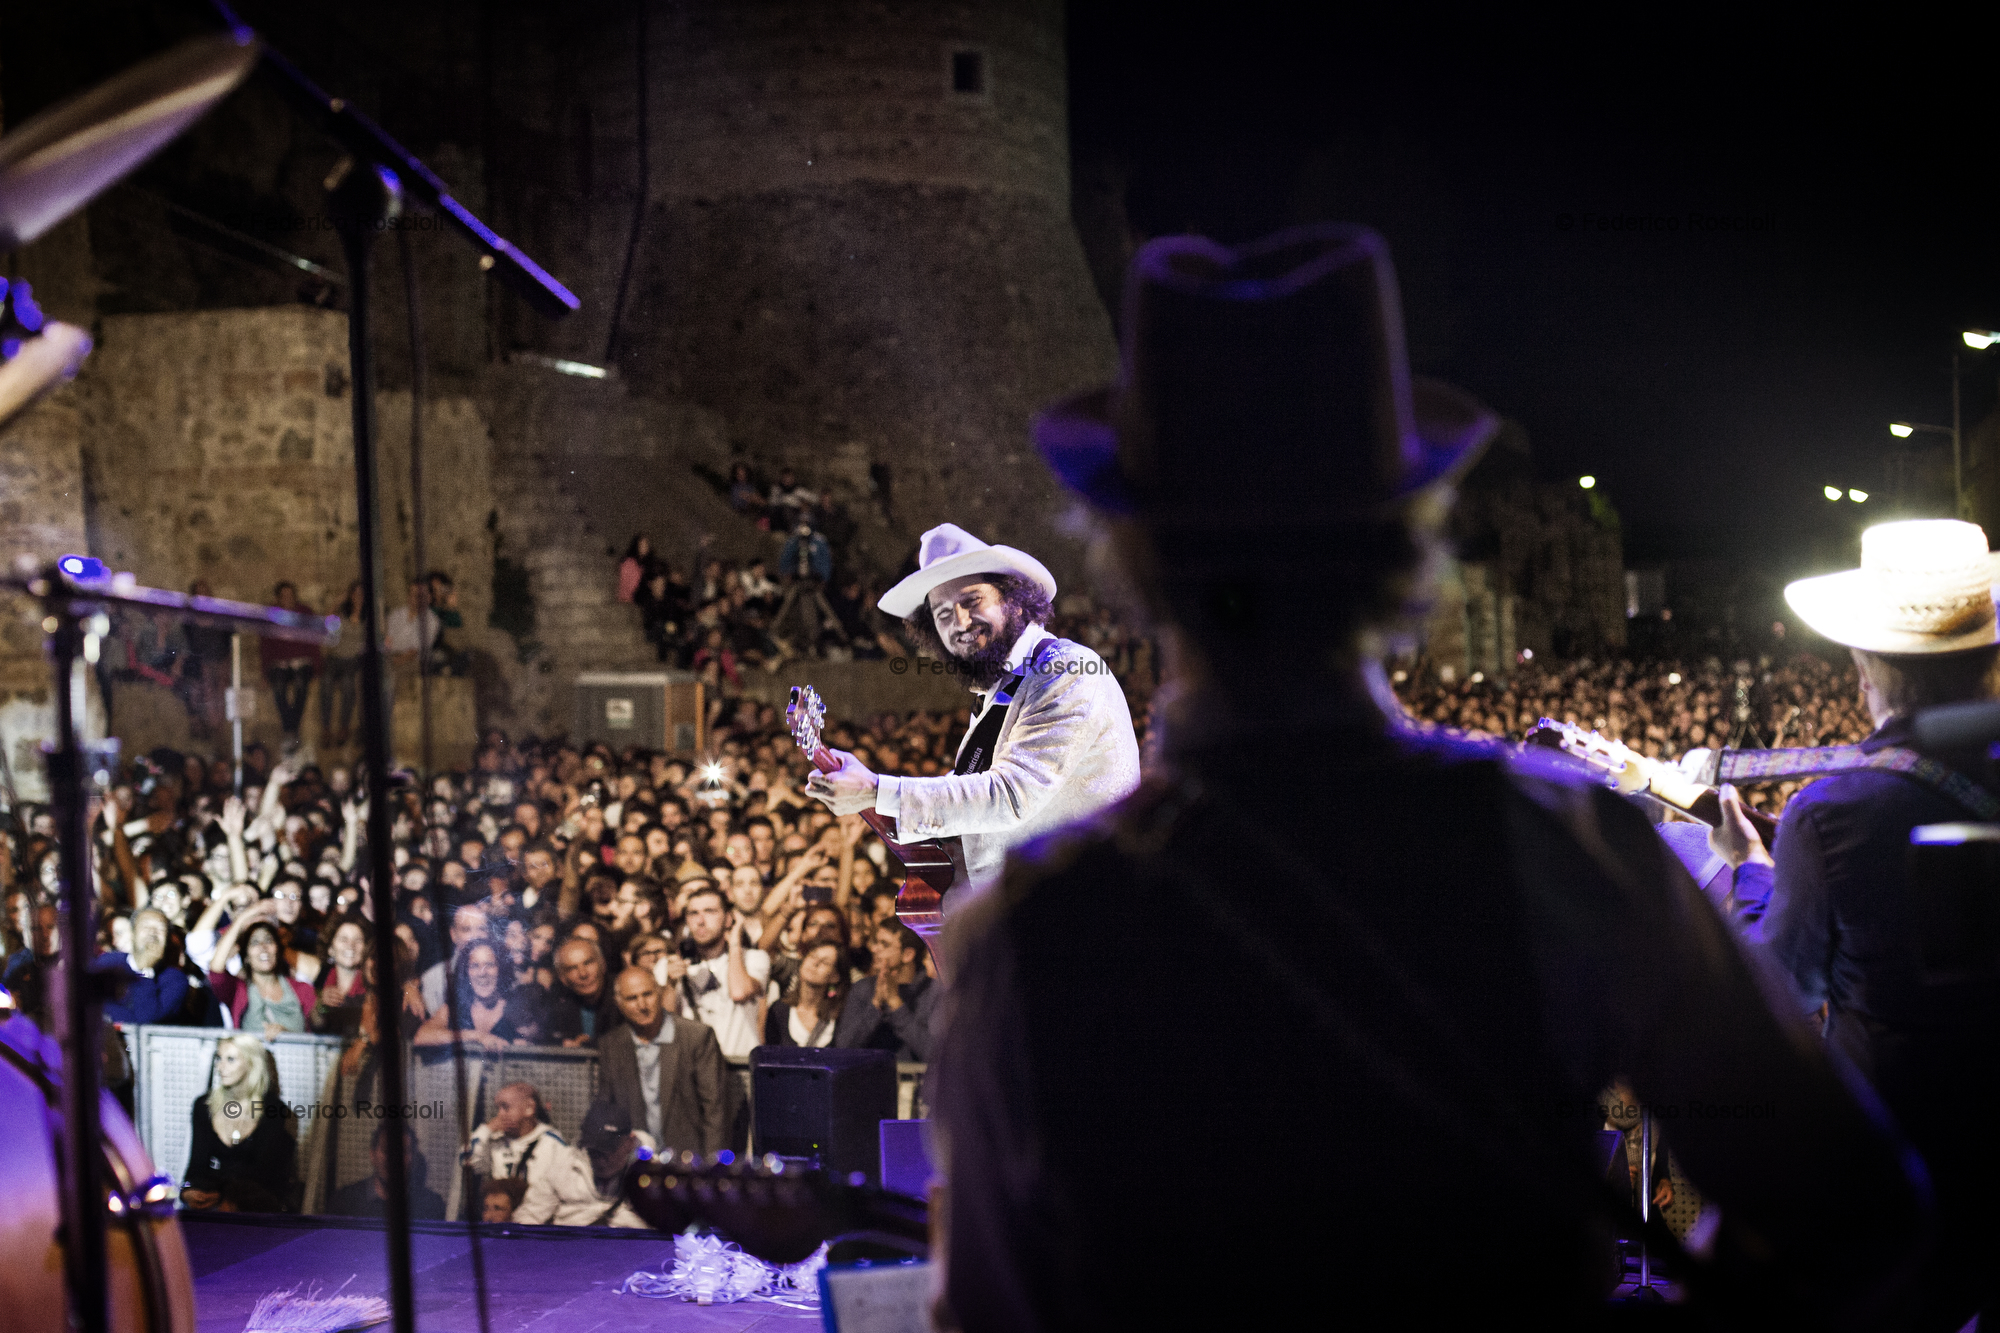 Calitri, Avellino, Italy. August 30, 2013. Final concert of the Sponz Fest in Calitri by Vinicio Capossela and La Banda della Posta.